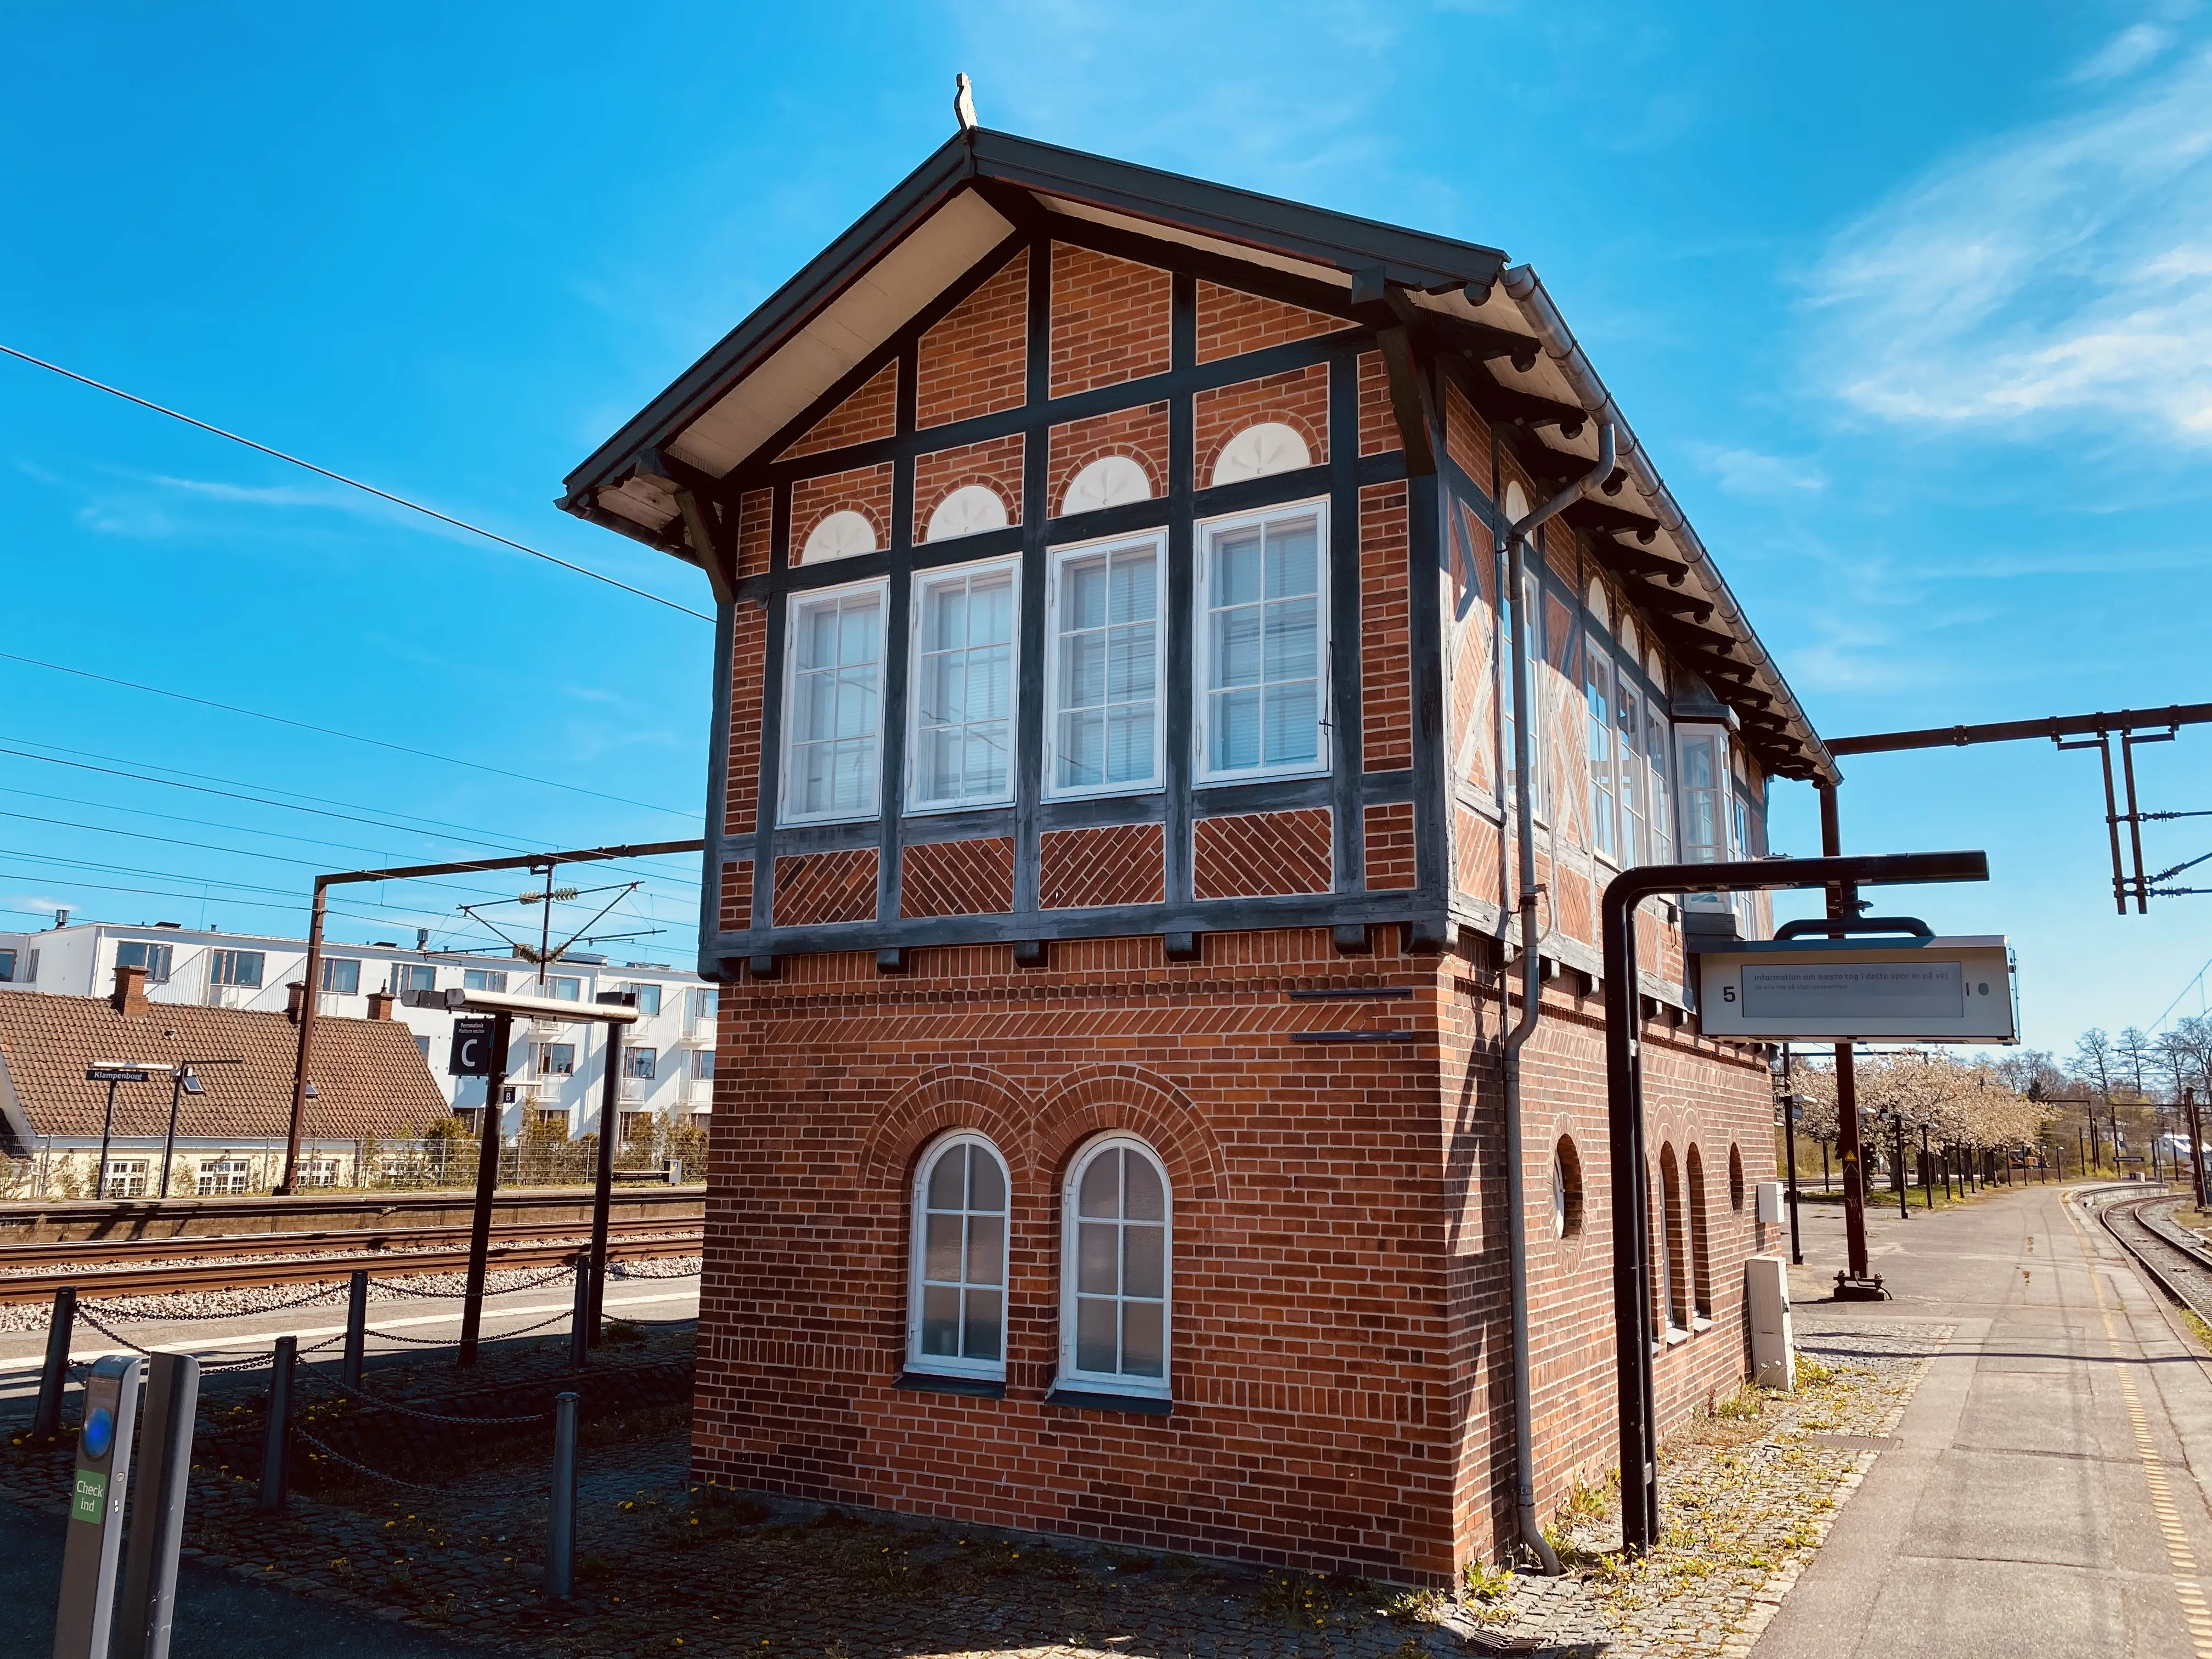 Klampenborg Station.